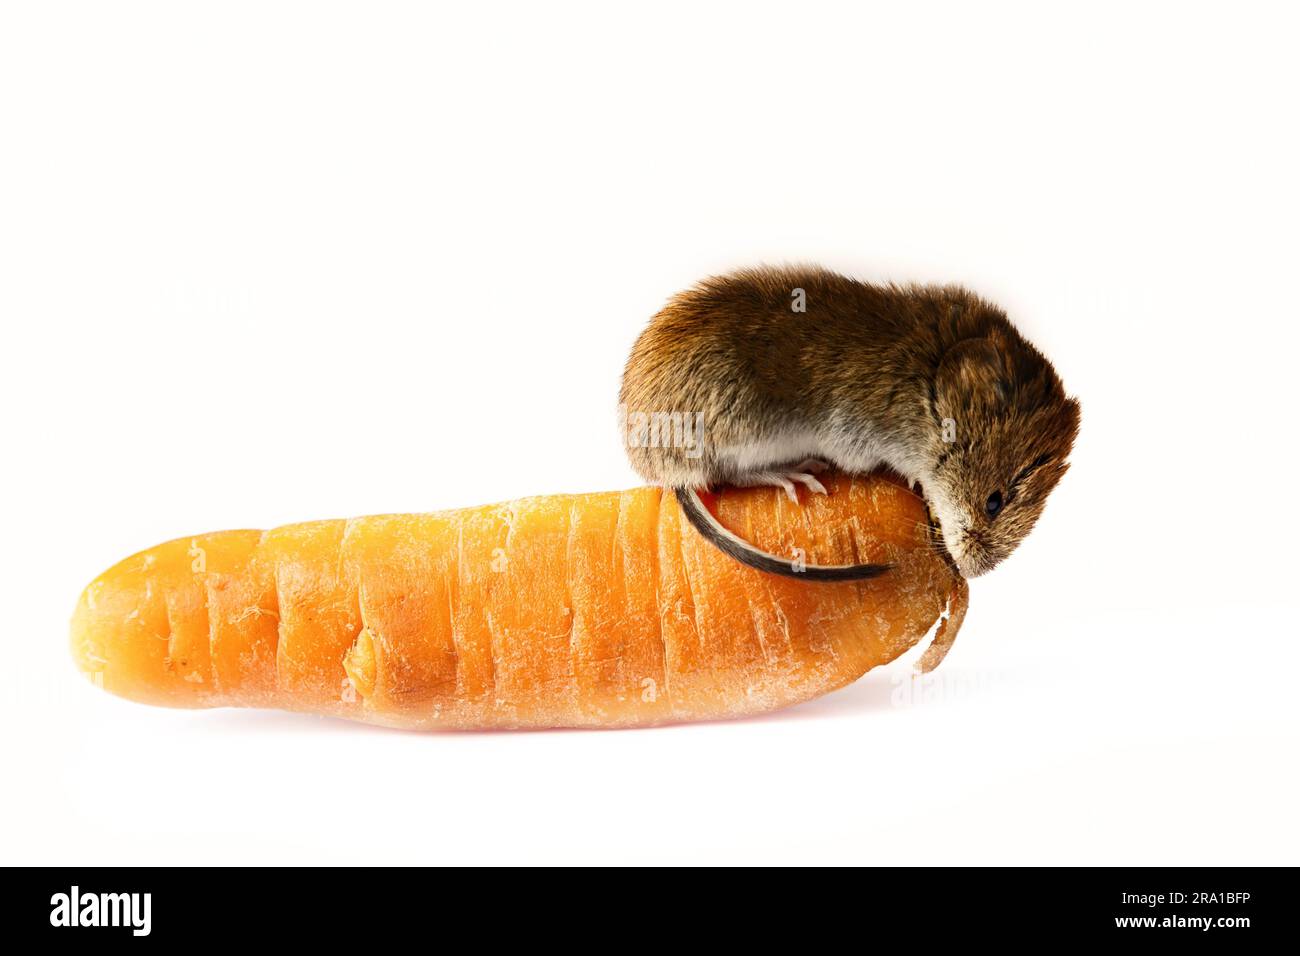 Mäuse schädigen Gemüse in Gemüselagern schwer. Rote Wühlmaus und Karotte auf weißem Hintergrund Stockfoto